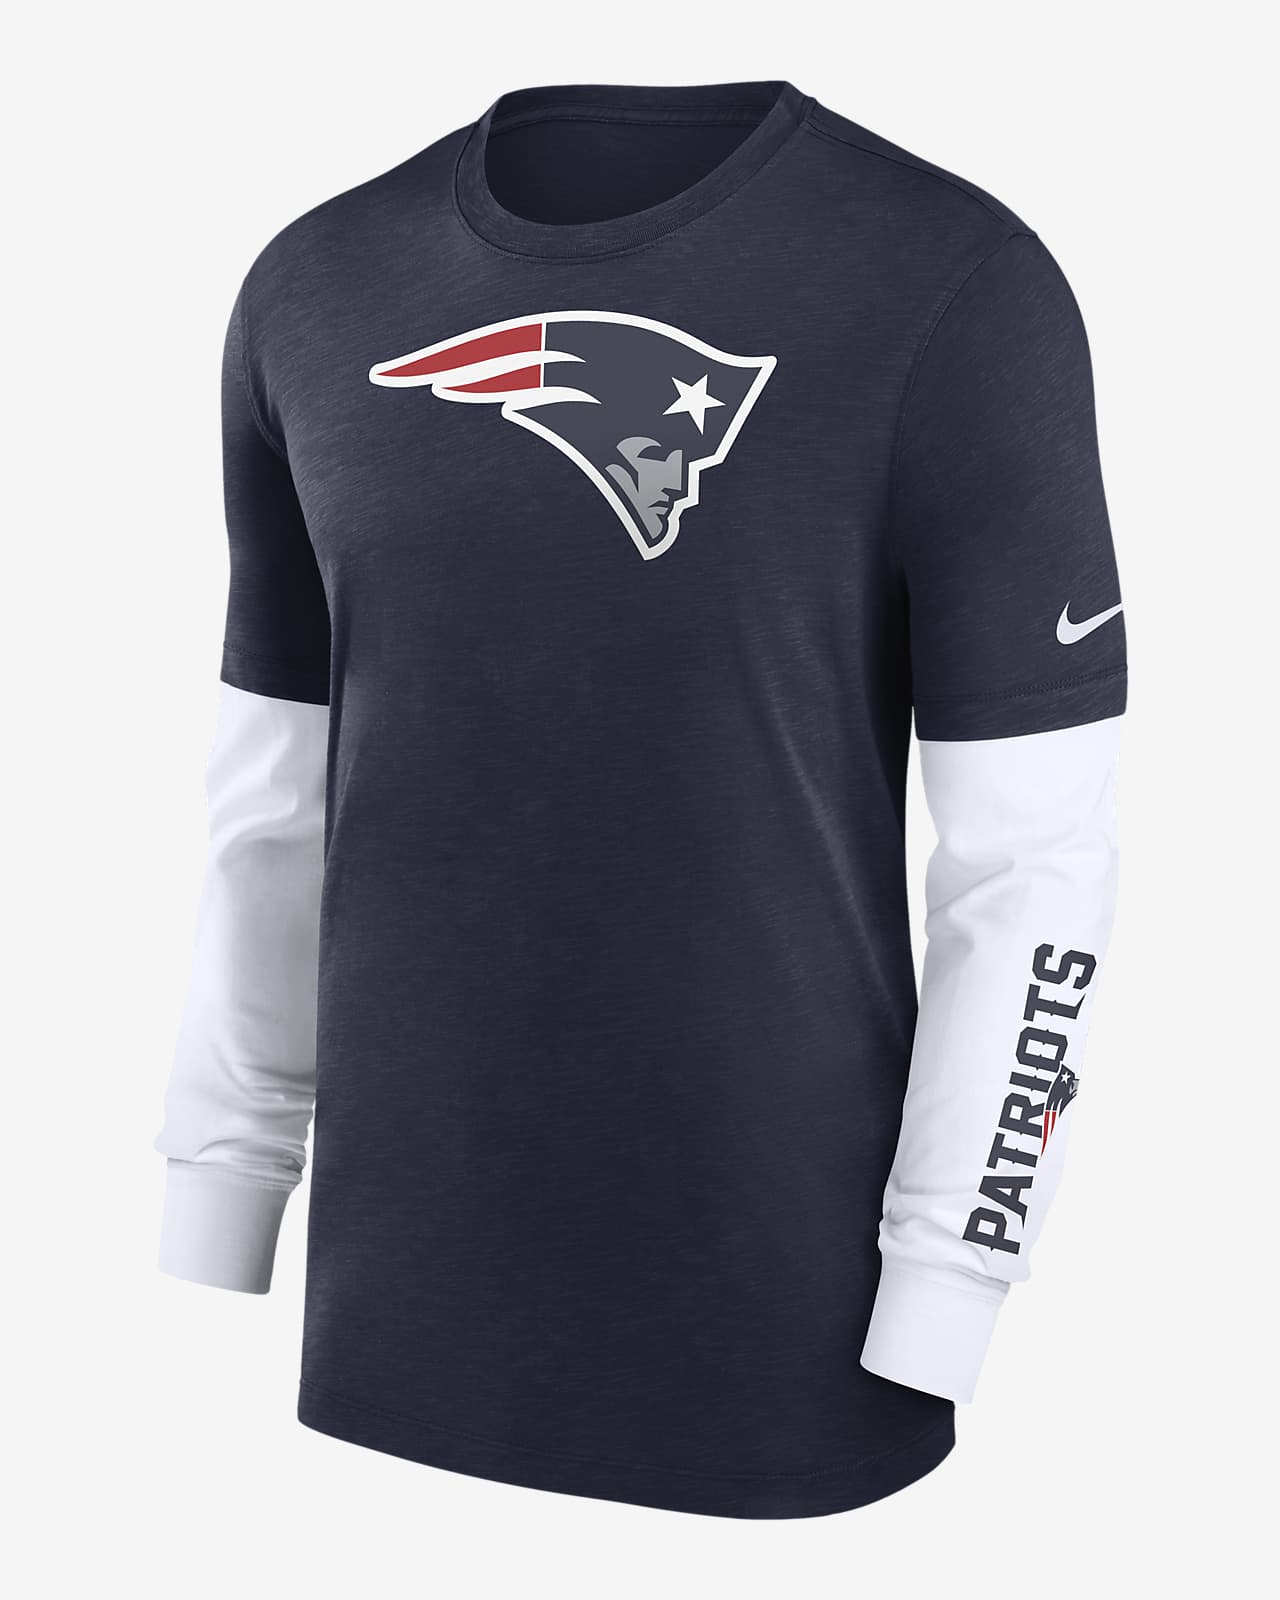 Playera de manga larga Nike de la NFL para hombre New England Patriots